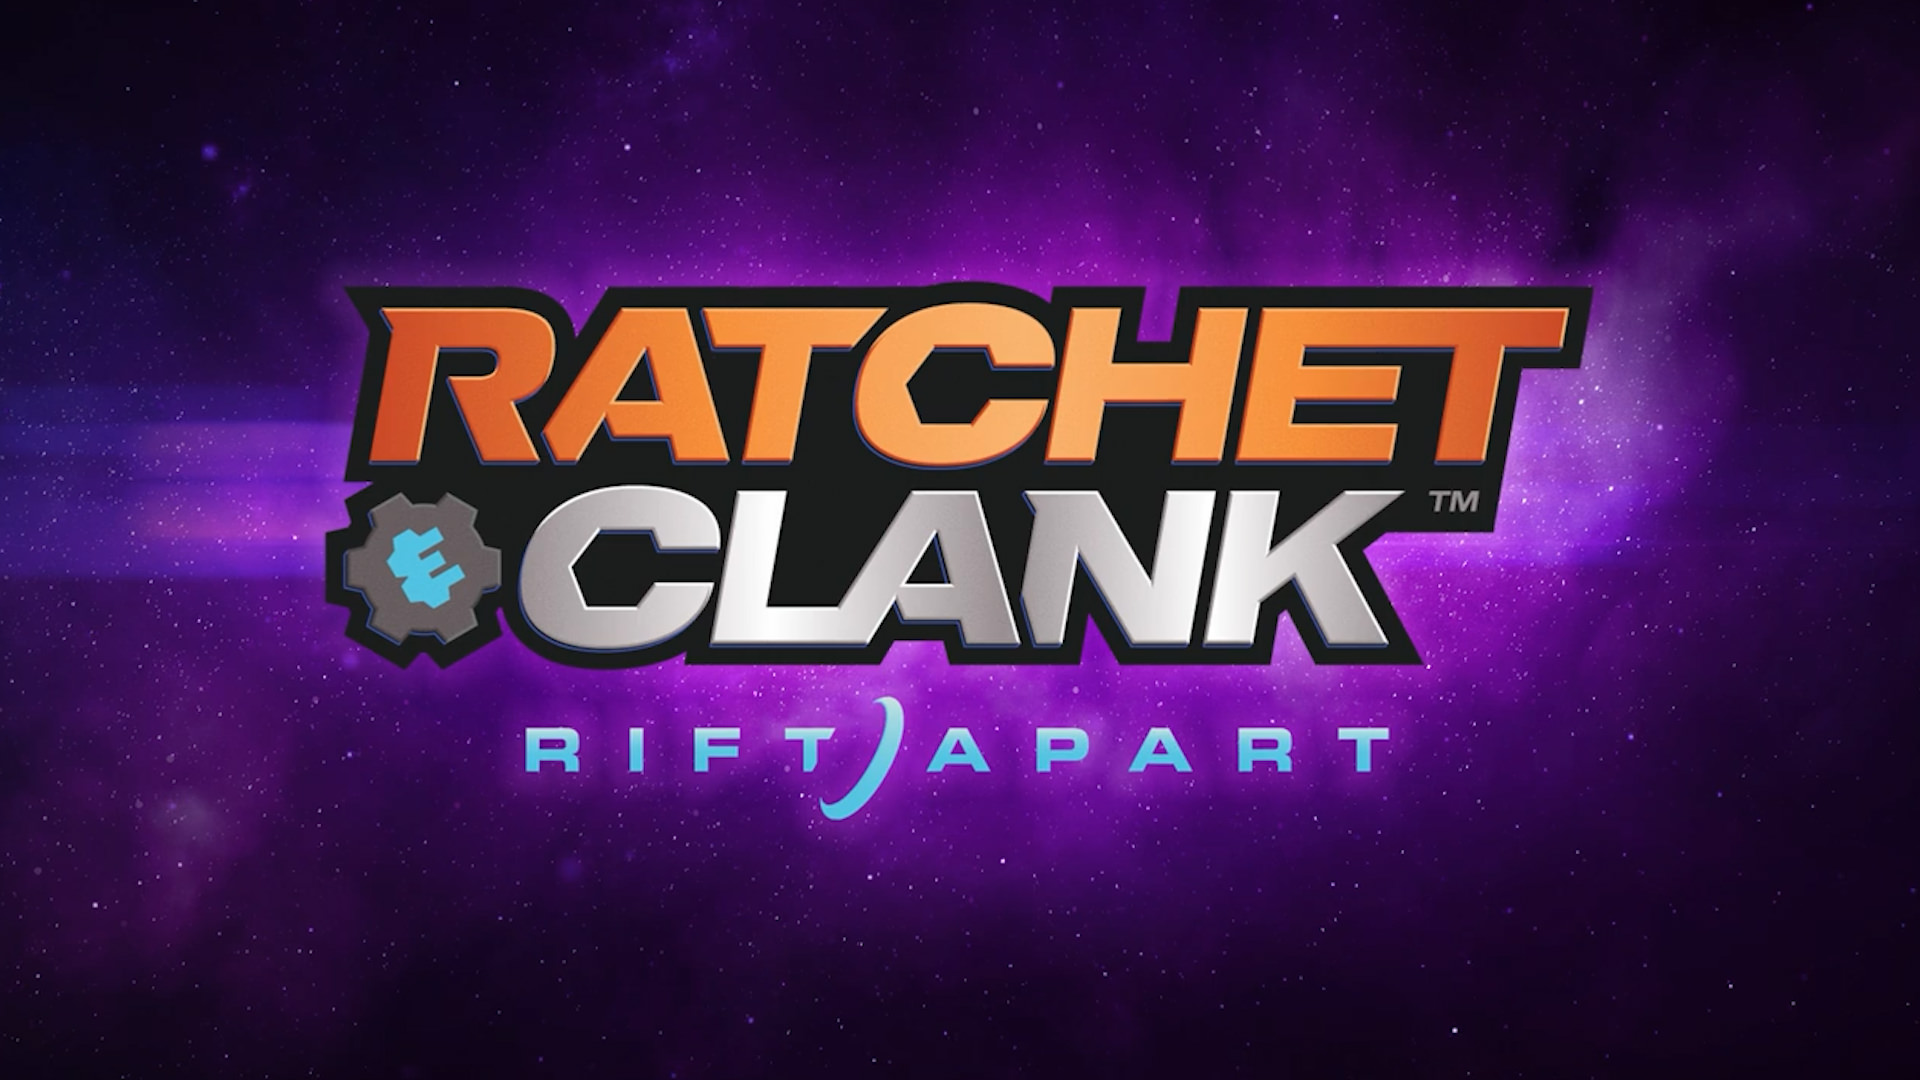 بازی Ratchet and Clank: Rift Apart به صورت انحصاری فقط روی پلی استیشن ۵ منتشر خواهد شد